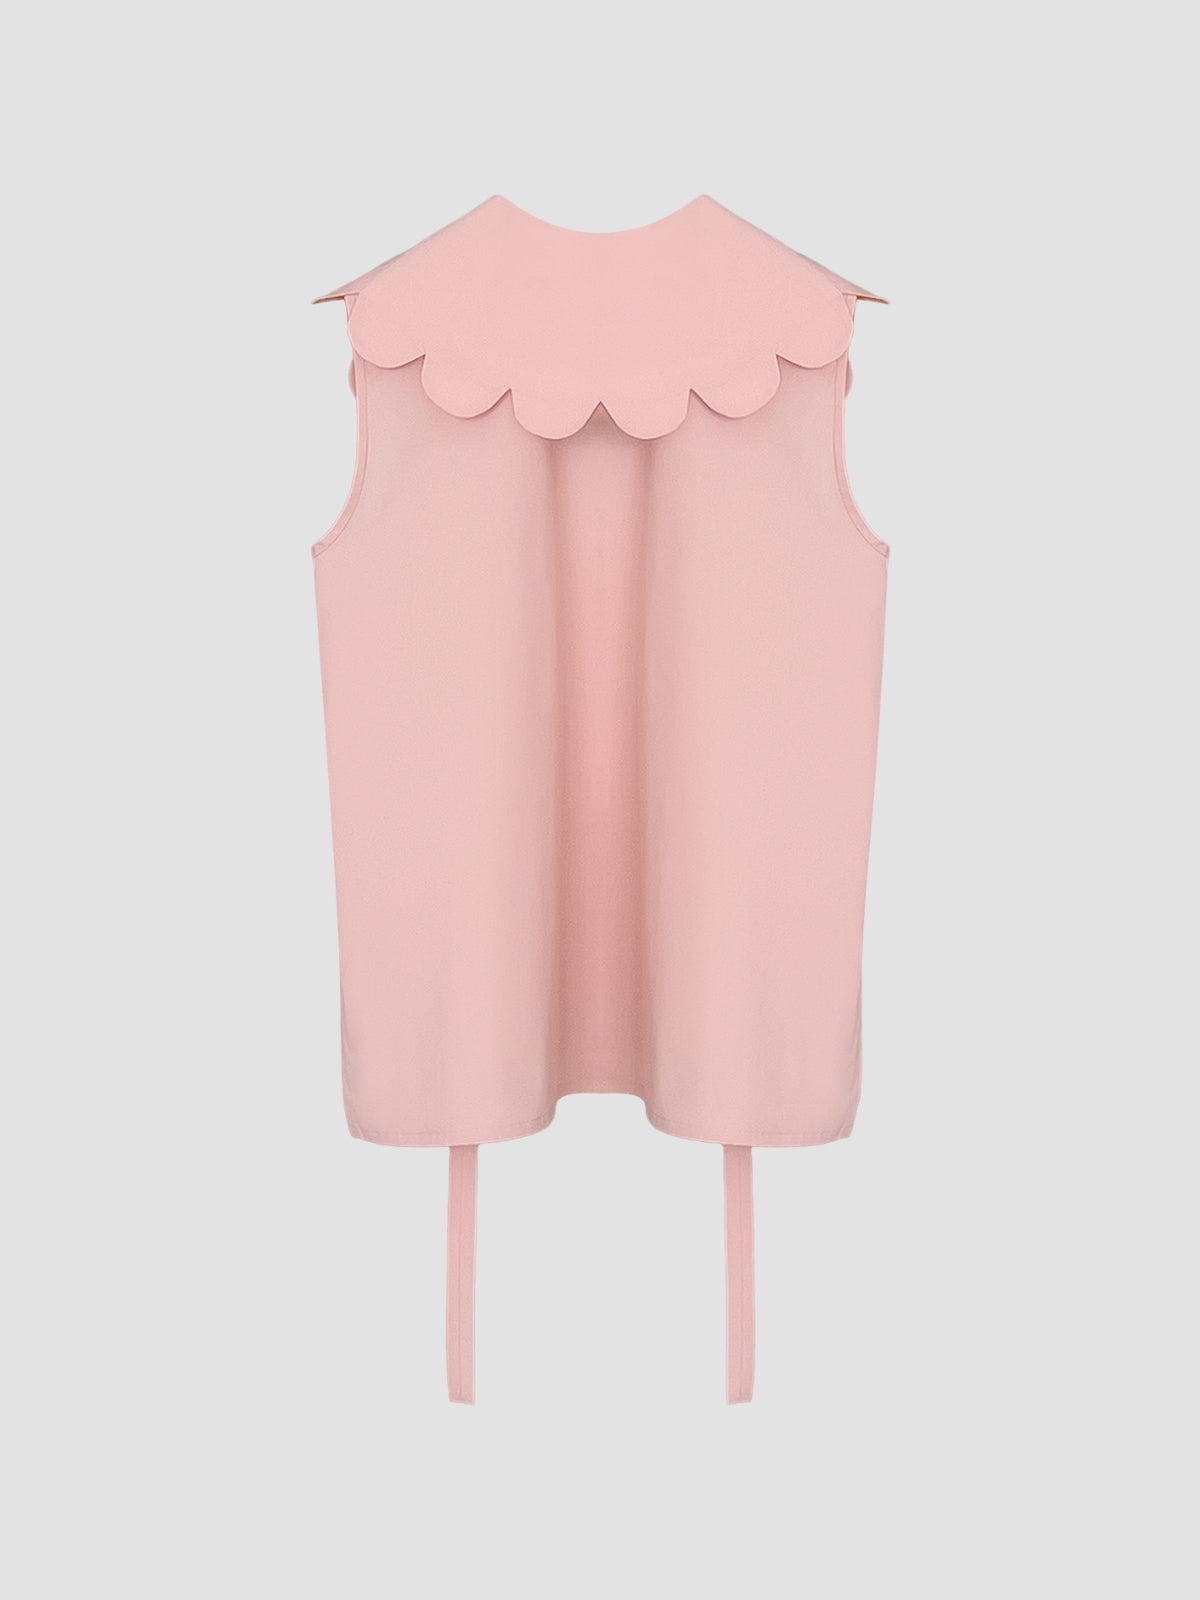 Coral pink Kawa shirt